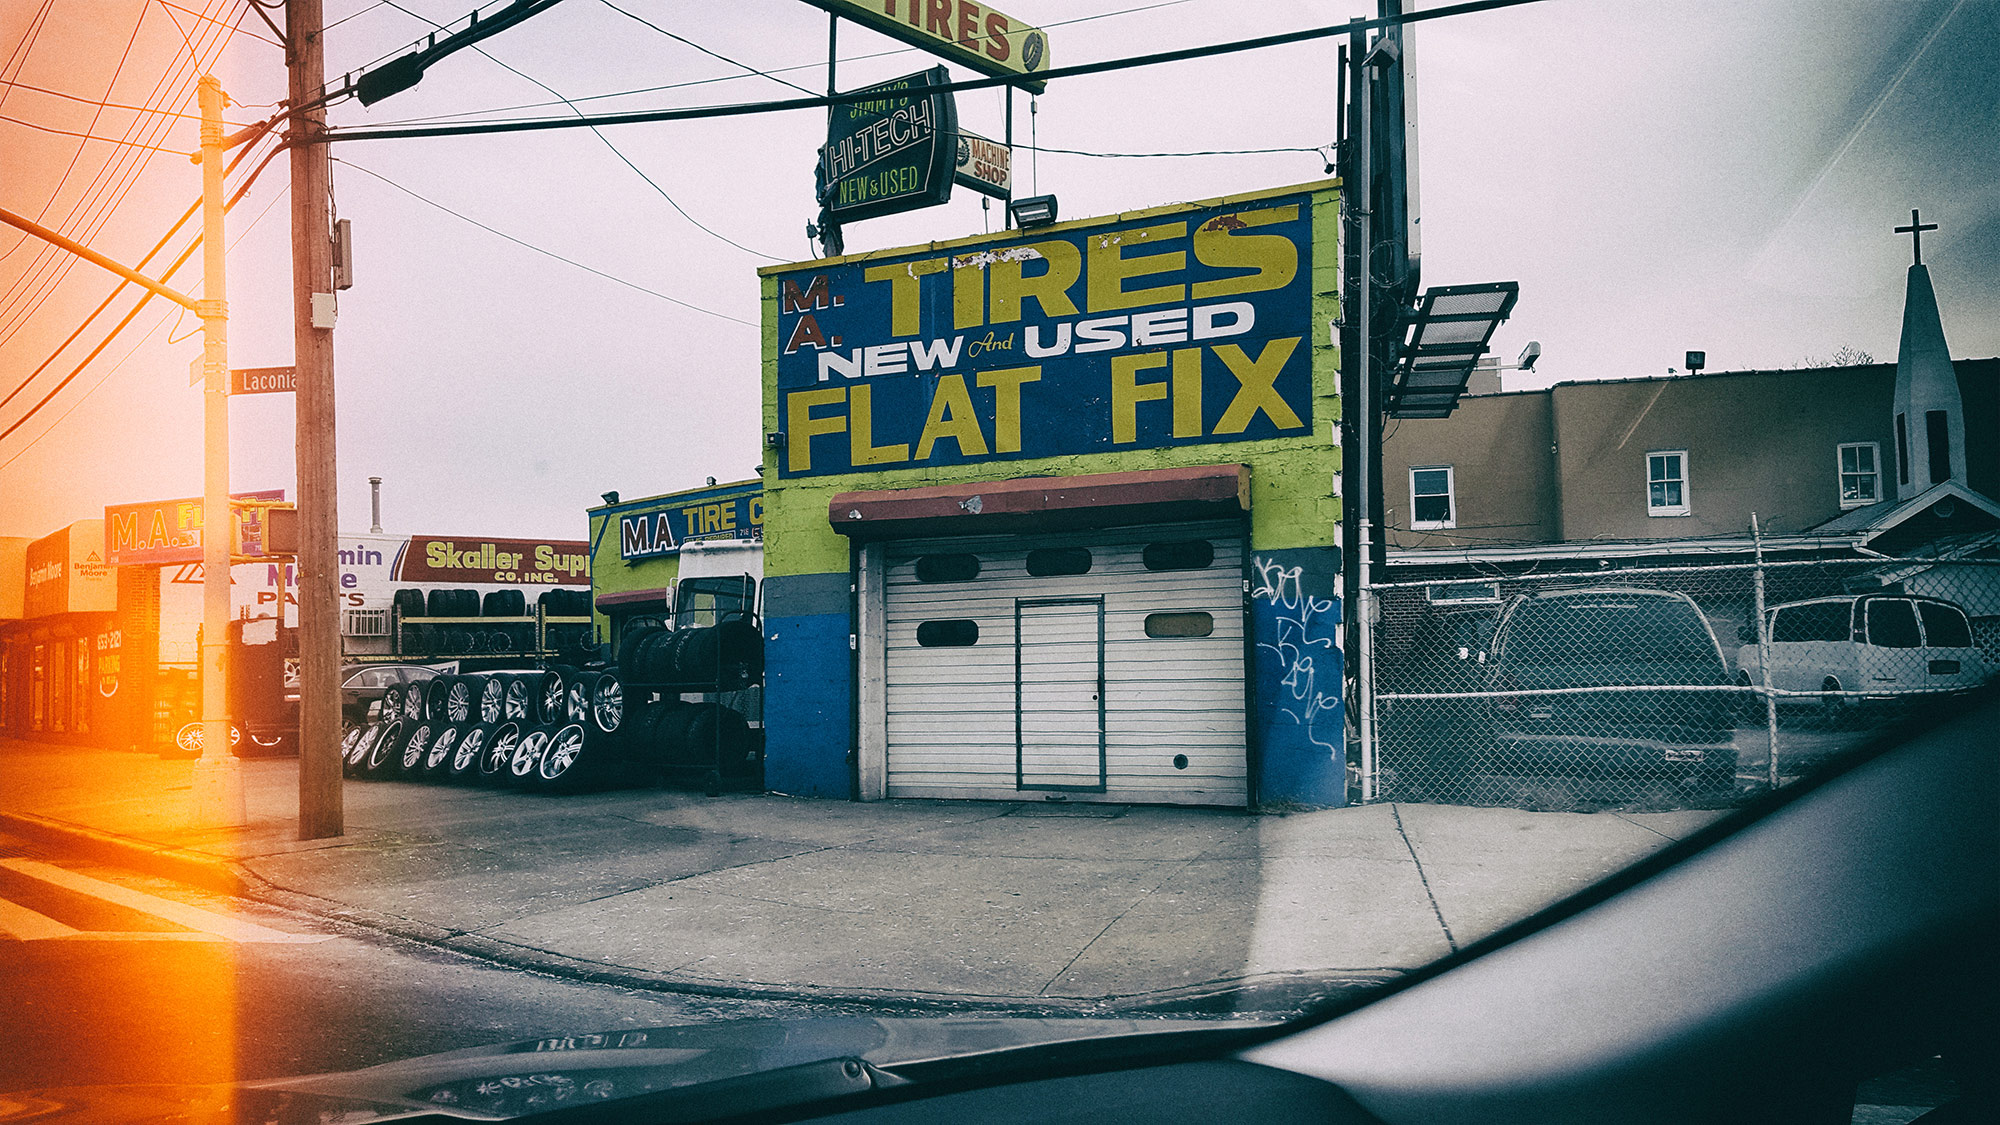 Flat fix ©2017 bret wills